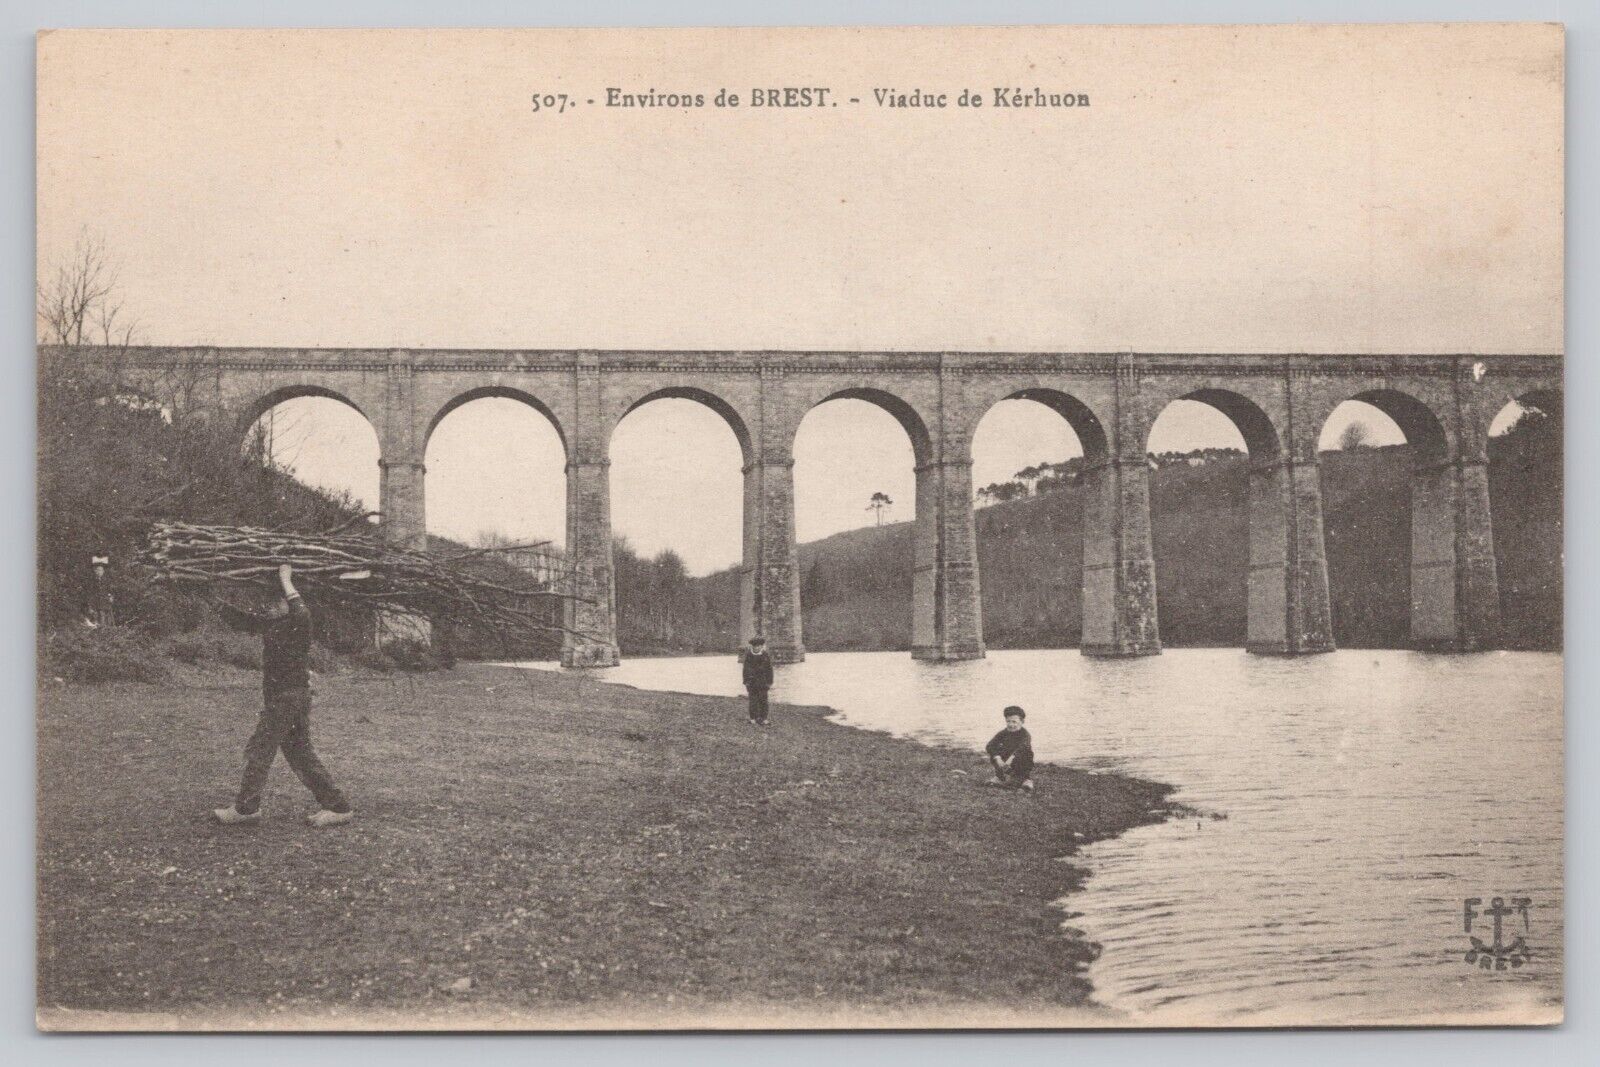 Brest France, Kerhuon Viaduct, Railroad Bridge, Vintage Postcard